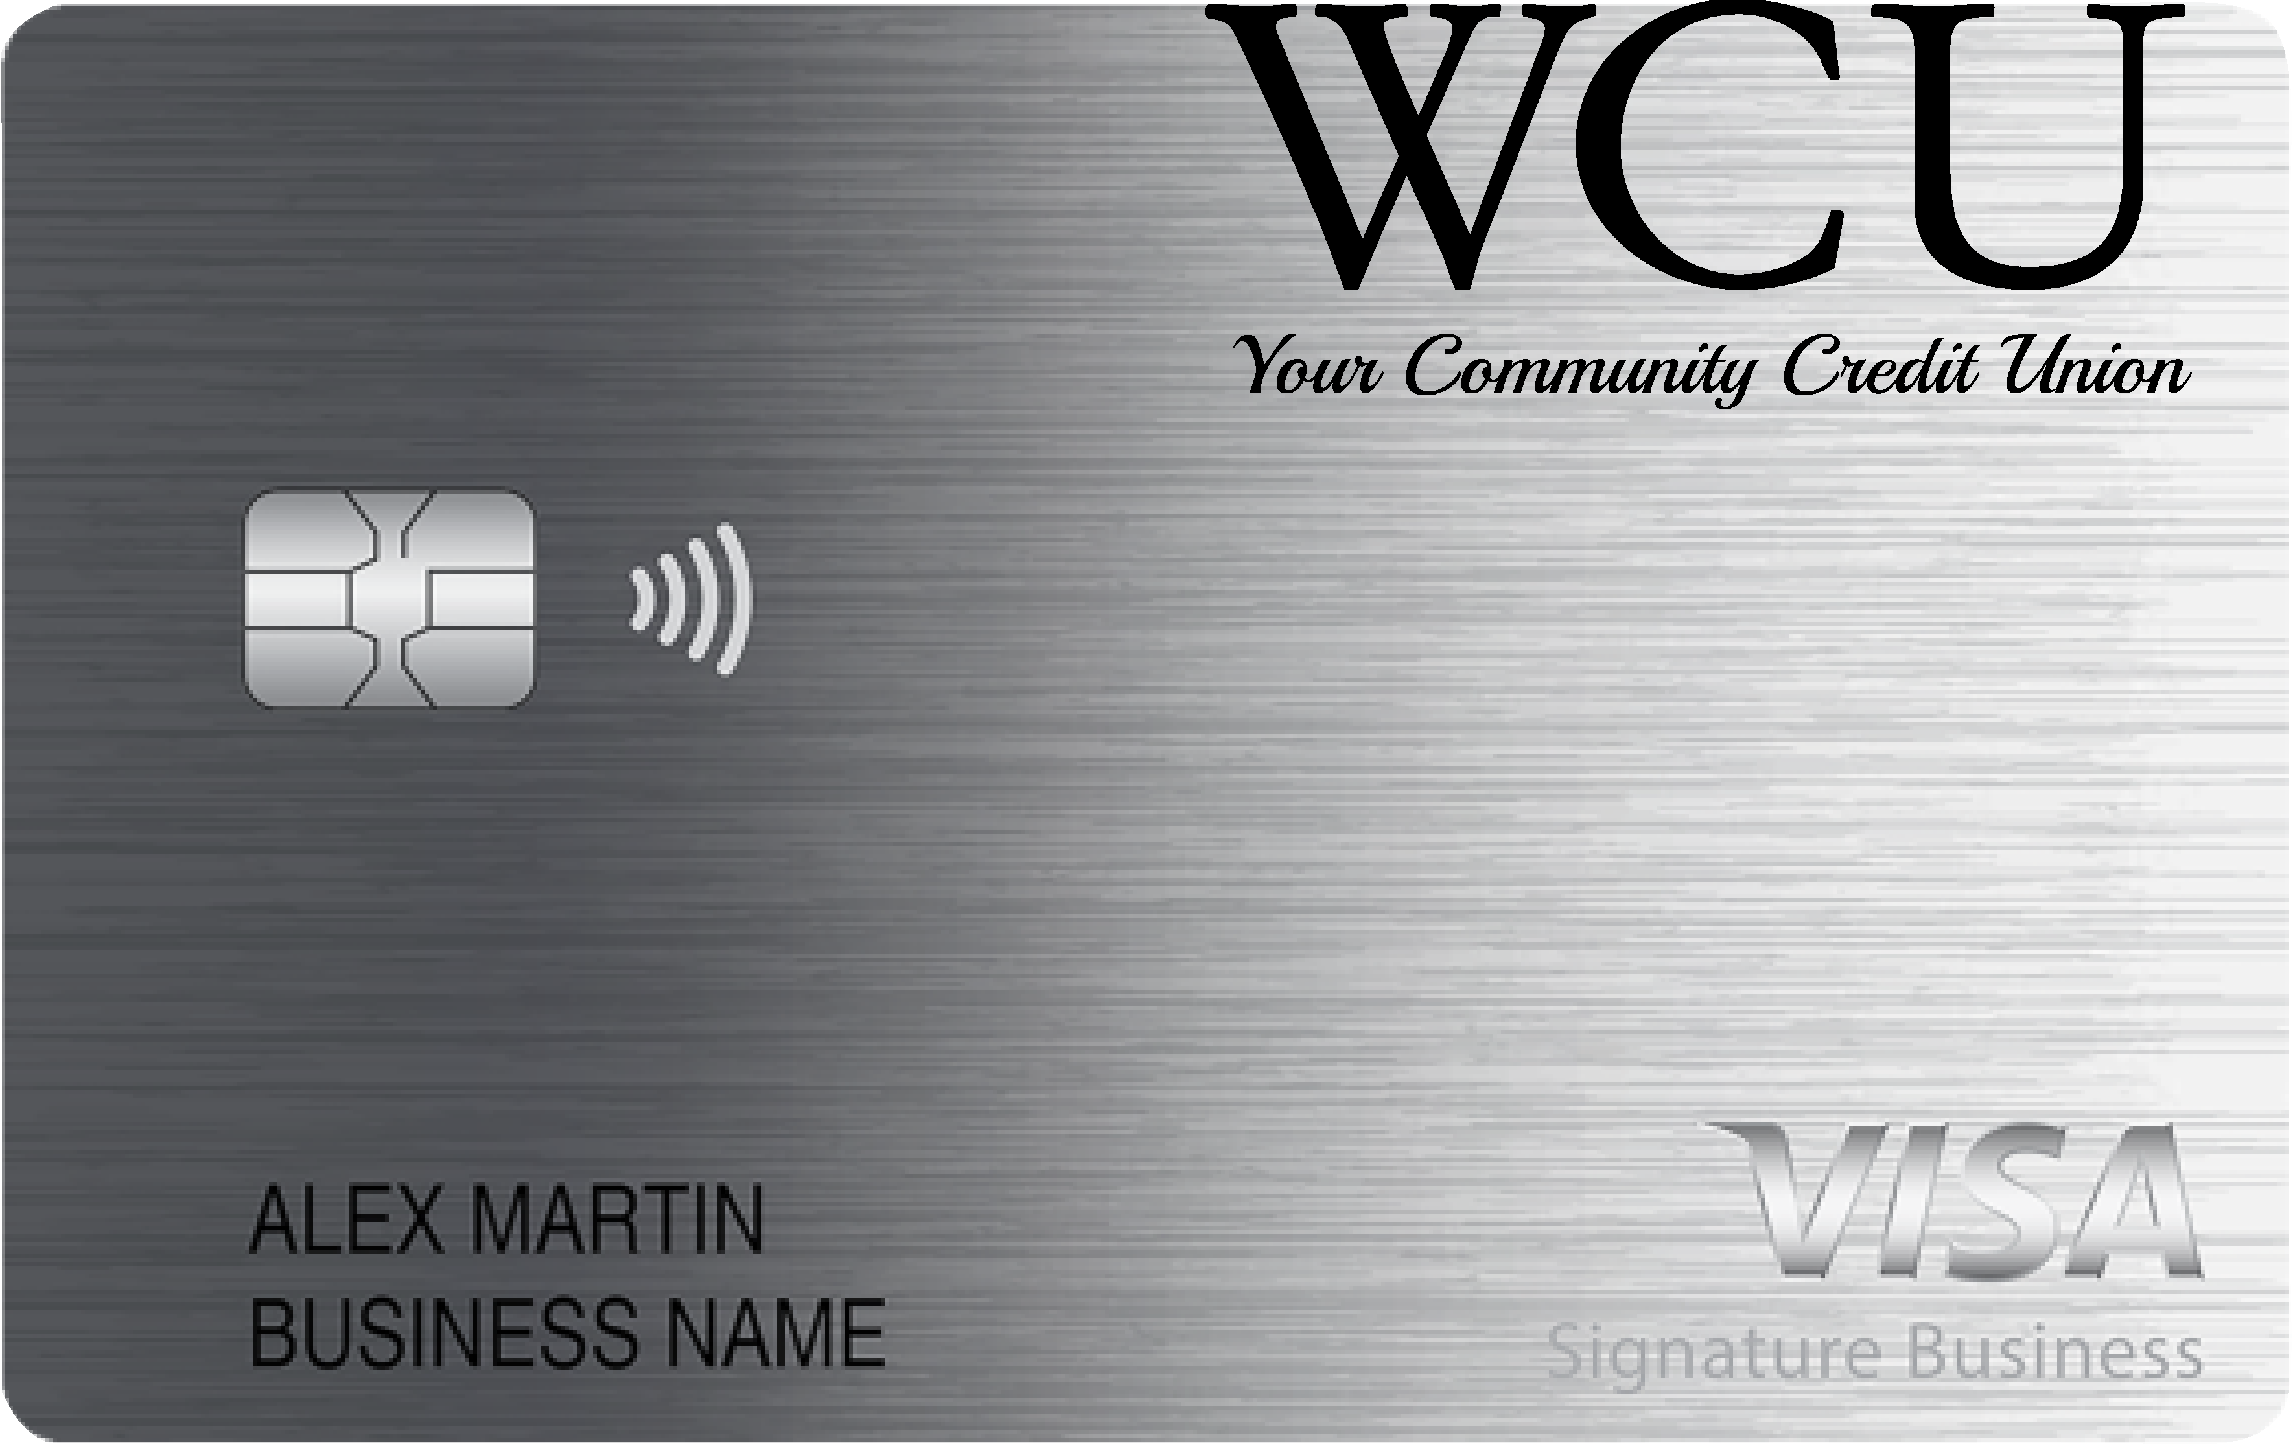 WCU Credit Union Smart Business Rewards Card